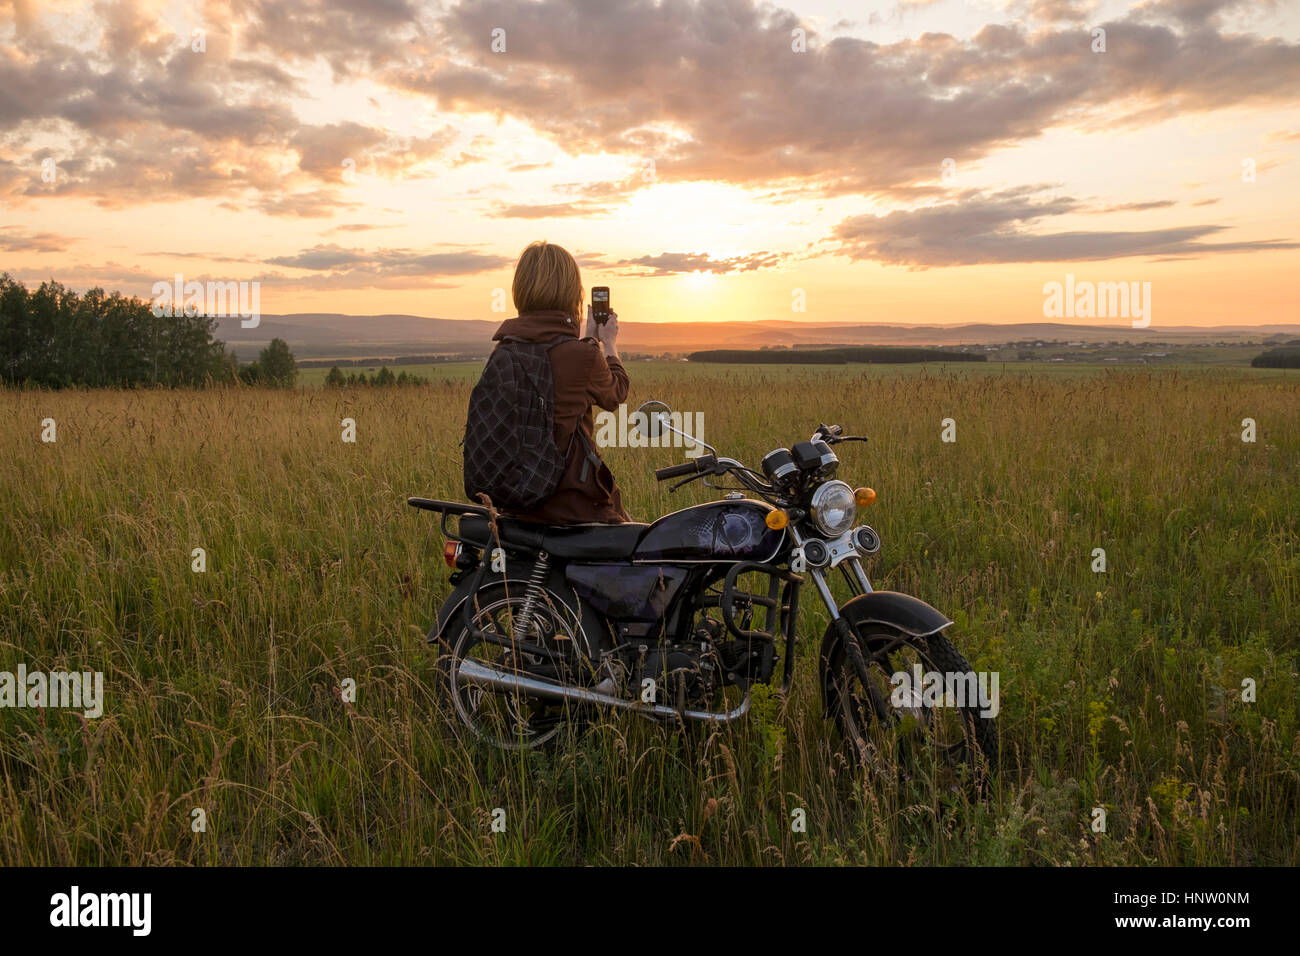 Caucasian woman avec moto dans domaine photographier le coucher du soleil Banque D'Images